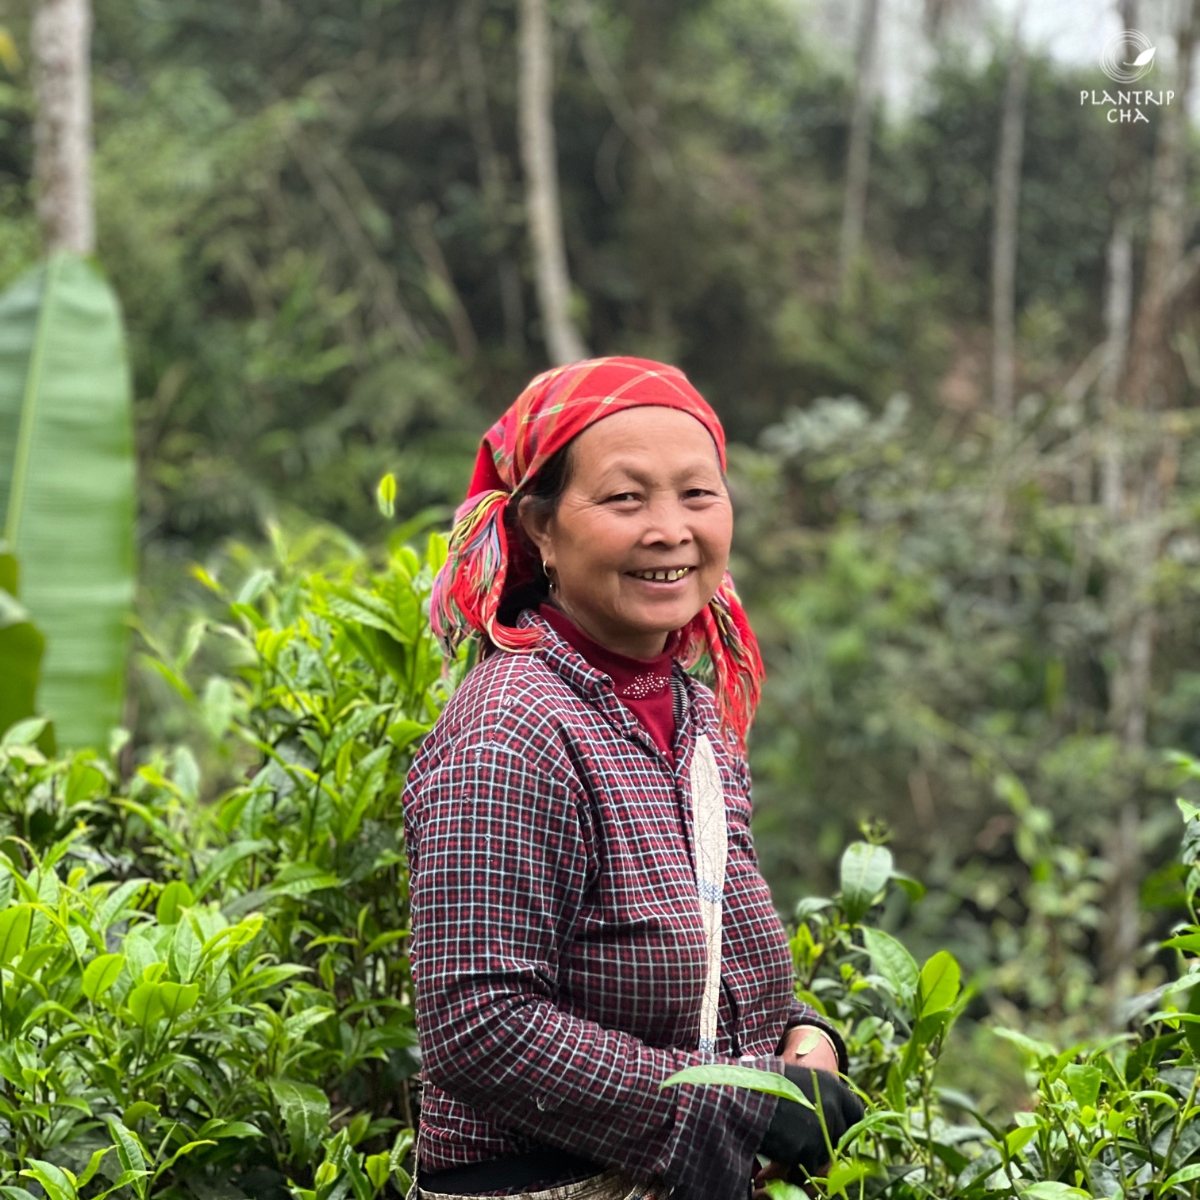 Người hái trà tại Xuân Thành - Quang Bình - Hà Giang (Ảnh: Plantrip Cha)